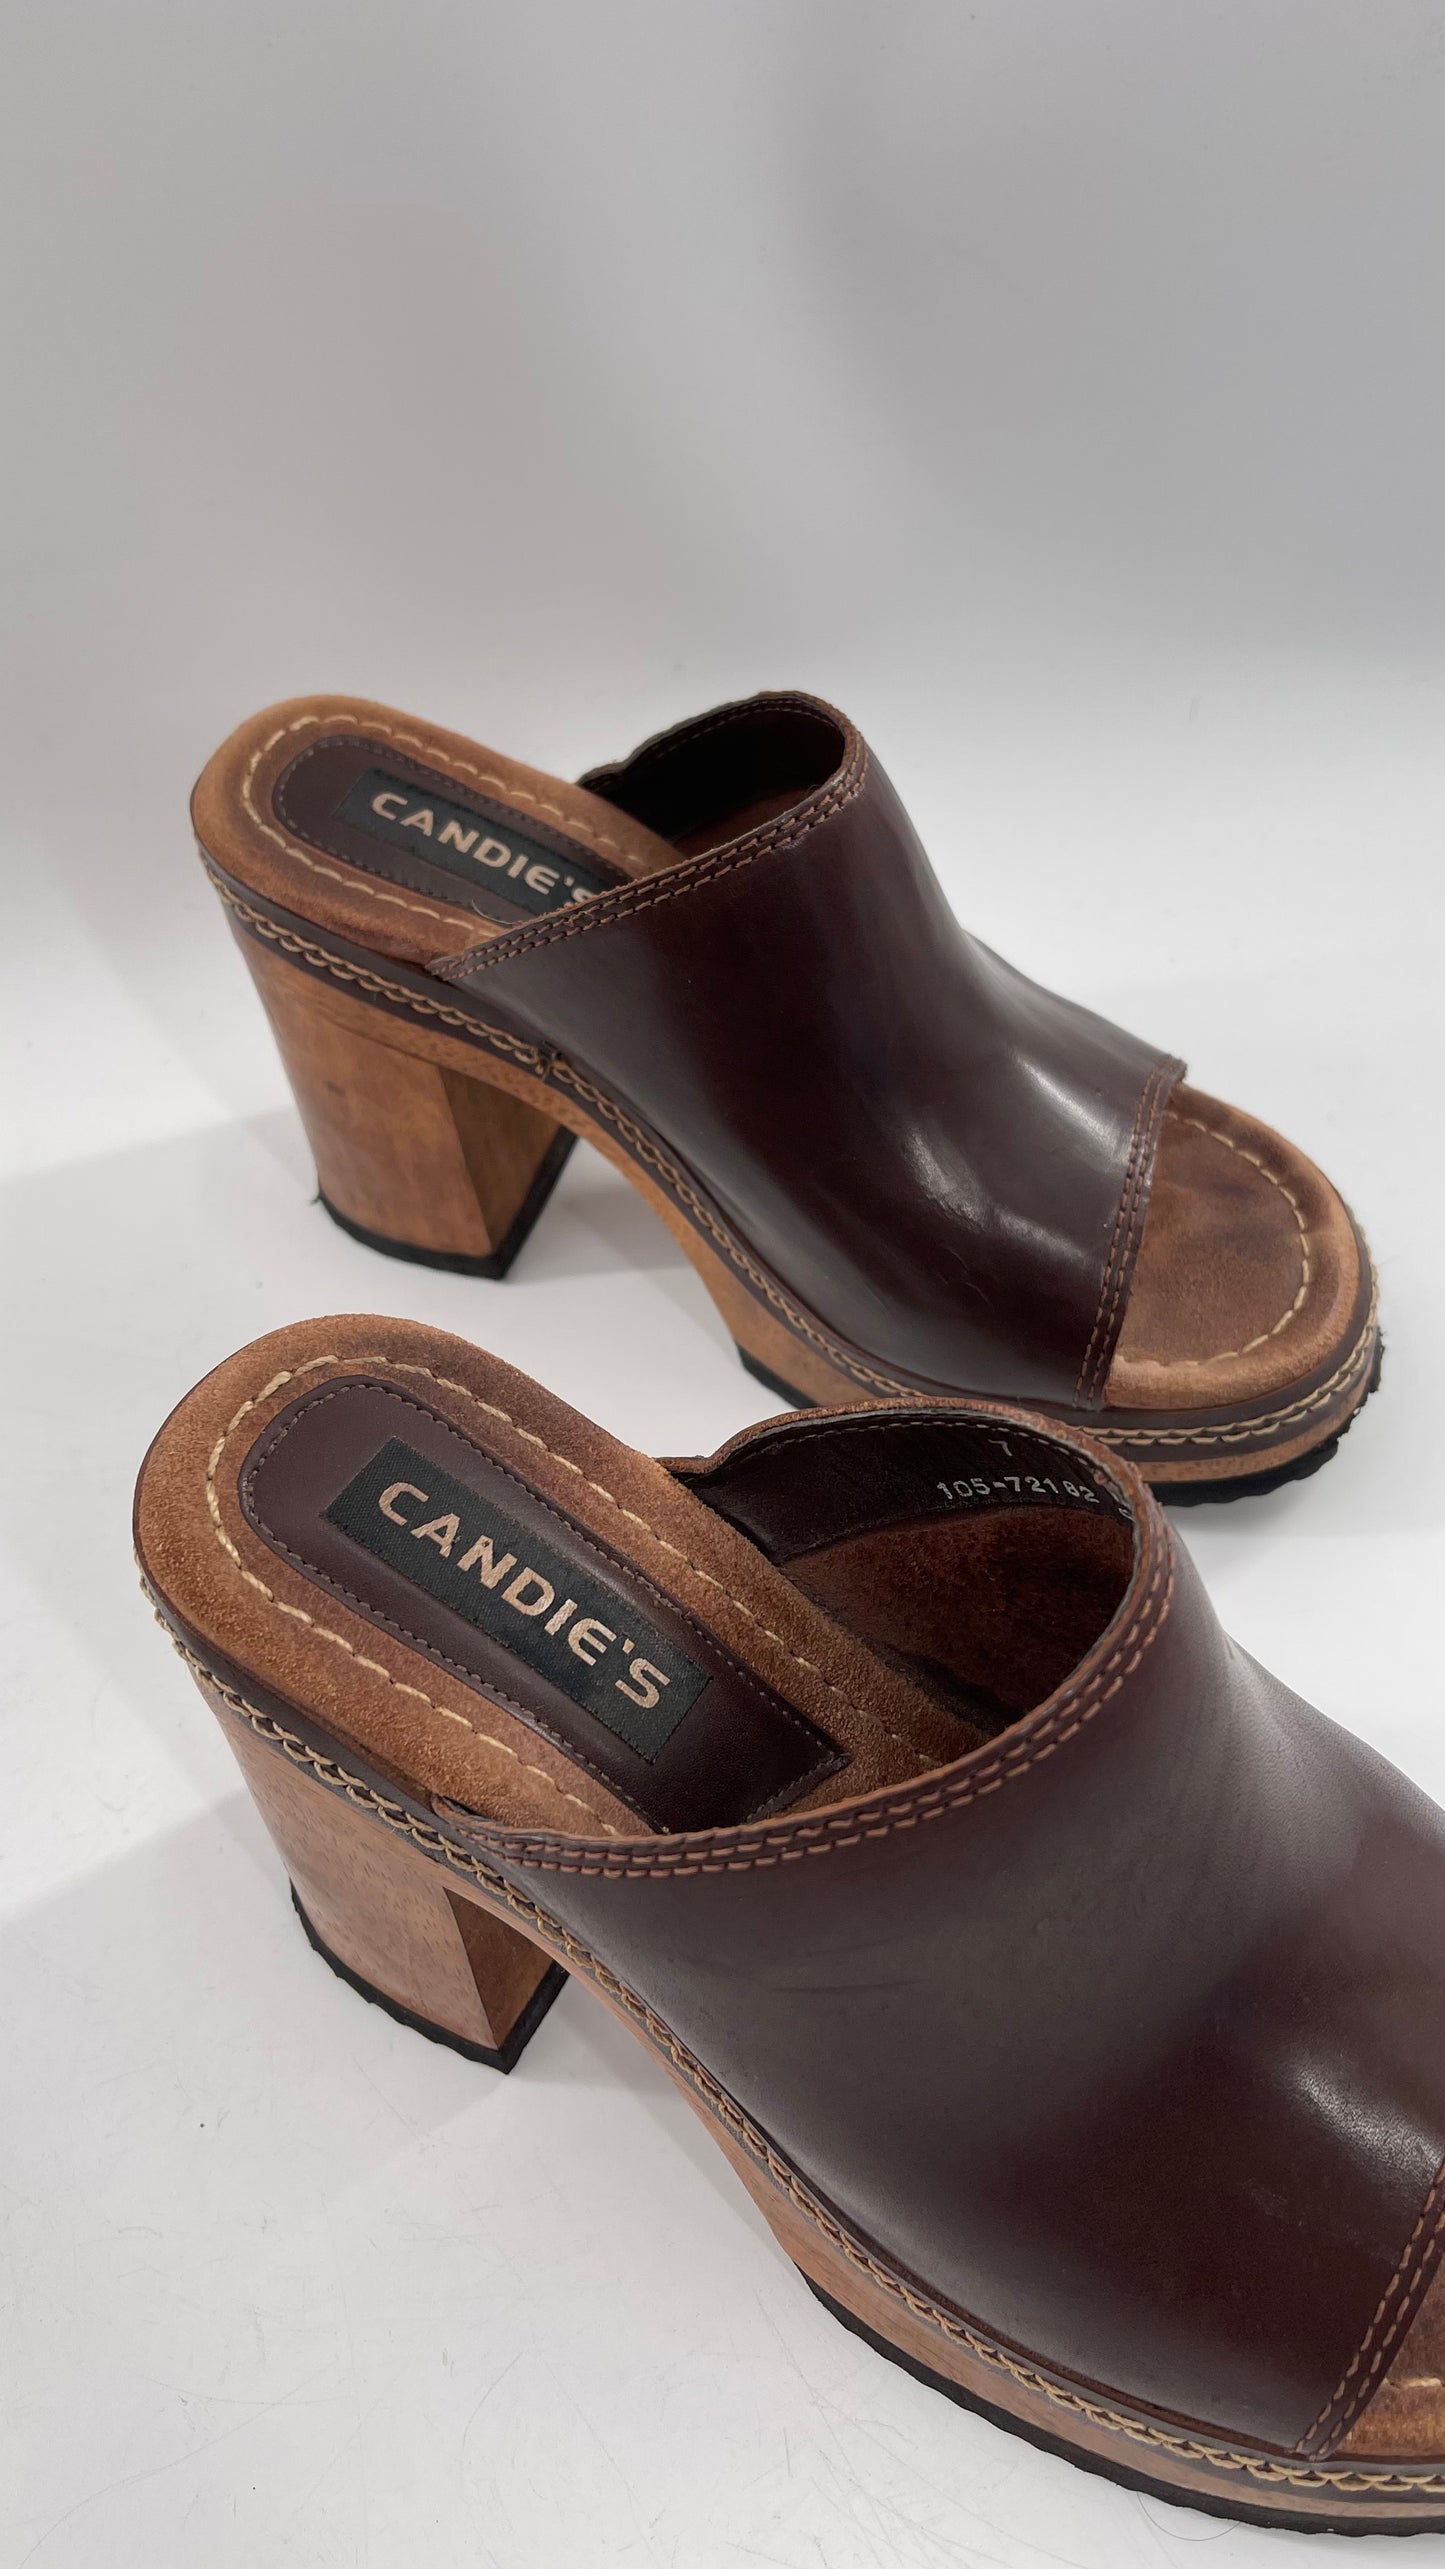 Vintage 1990s Candie’s Leather Mule Chunky Wood Platform Heels (7)